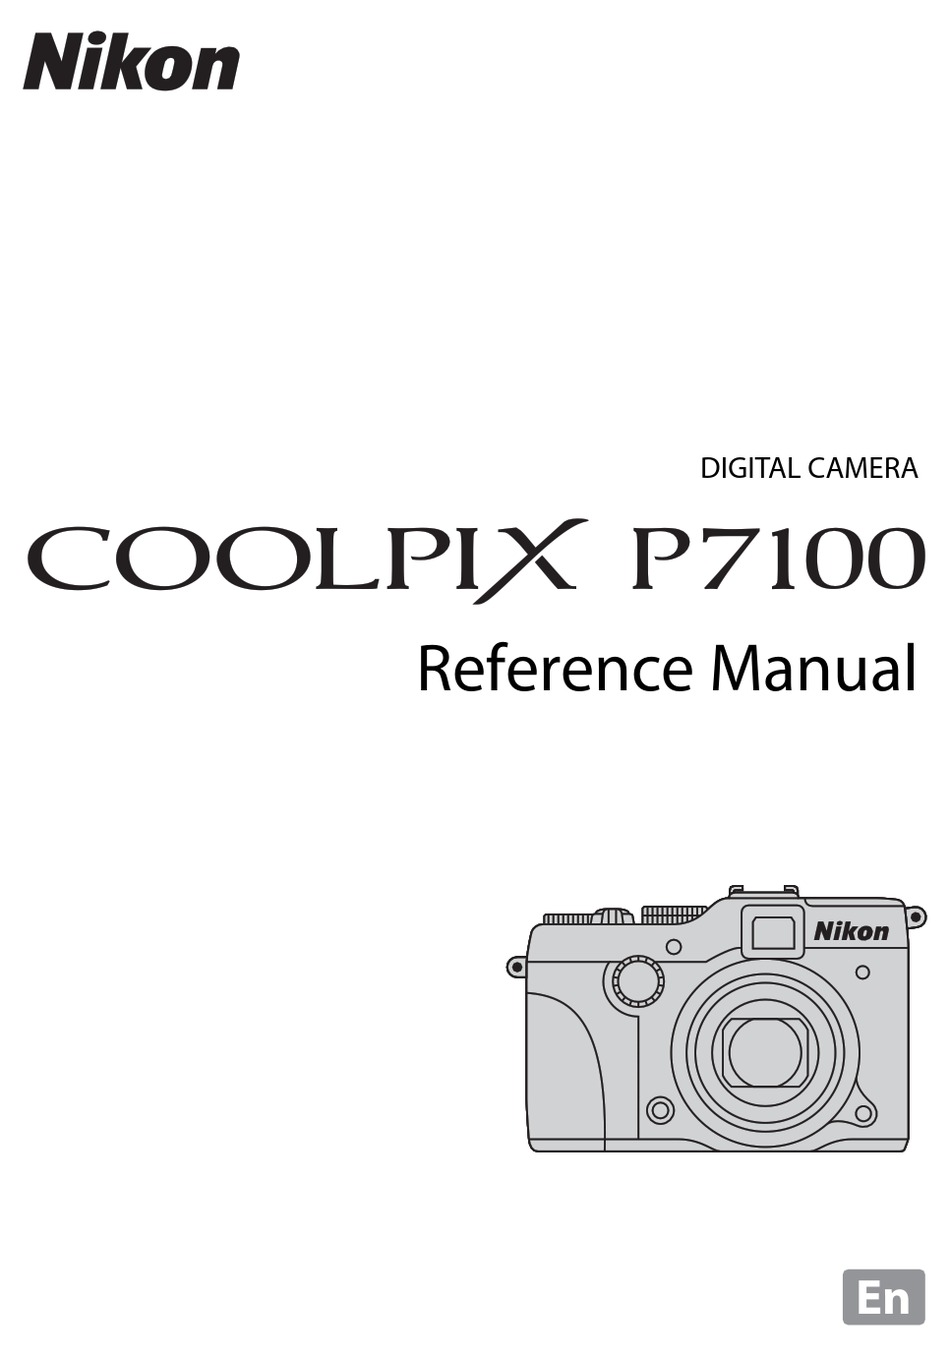 NIKON COOLPIX P7100 REFERENCE MANUAL Pdf Download | ManualsLib